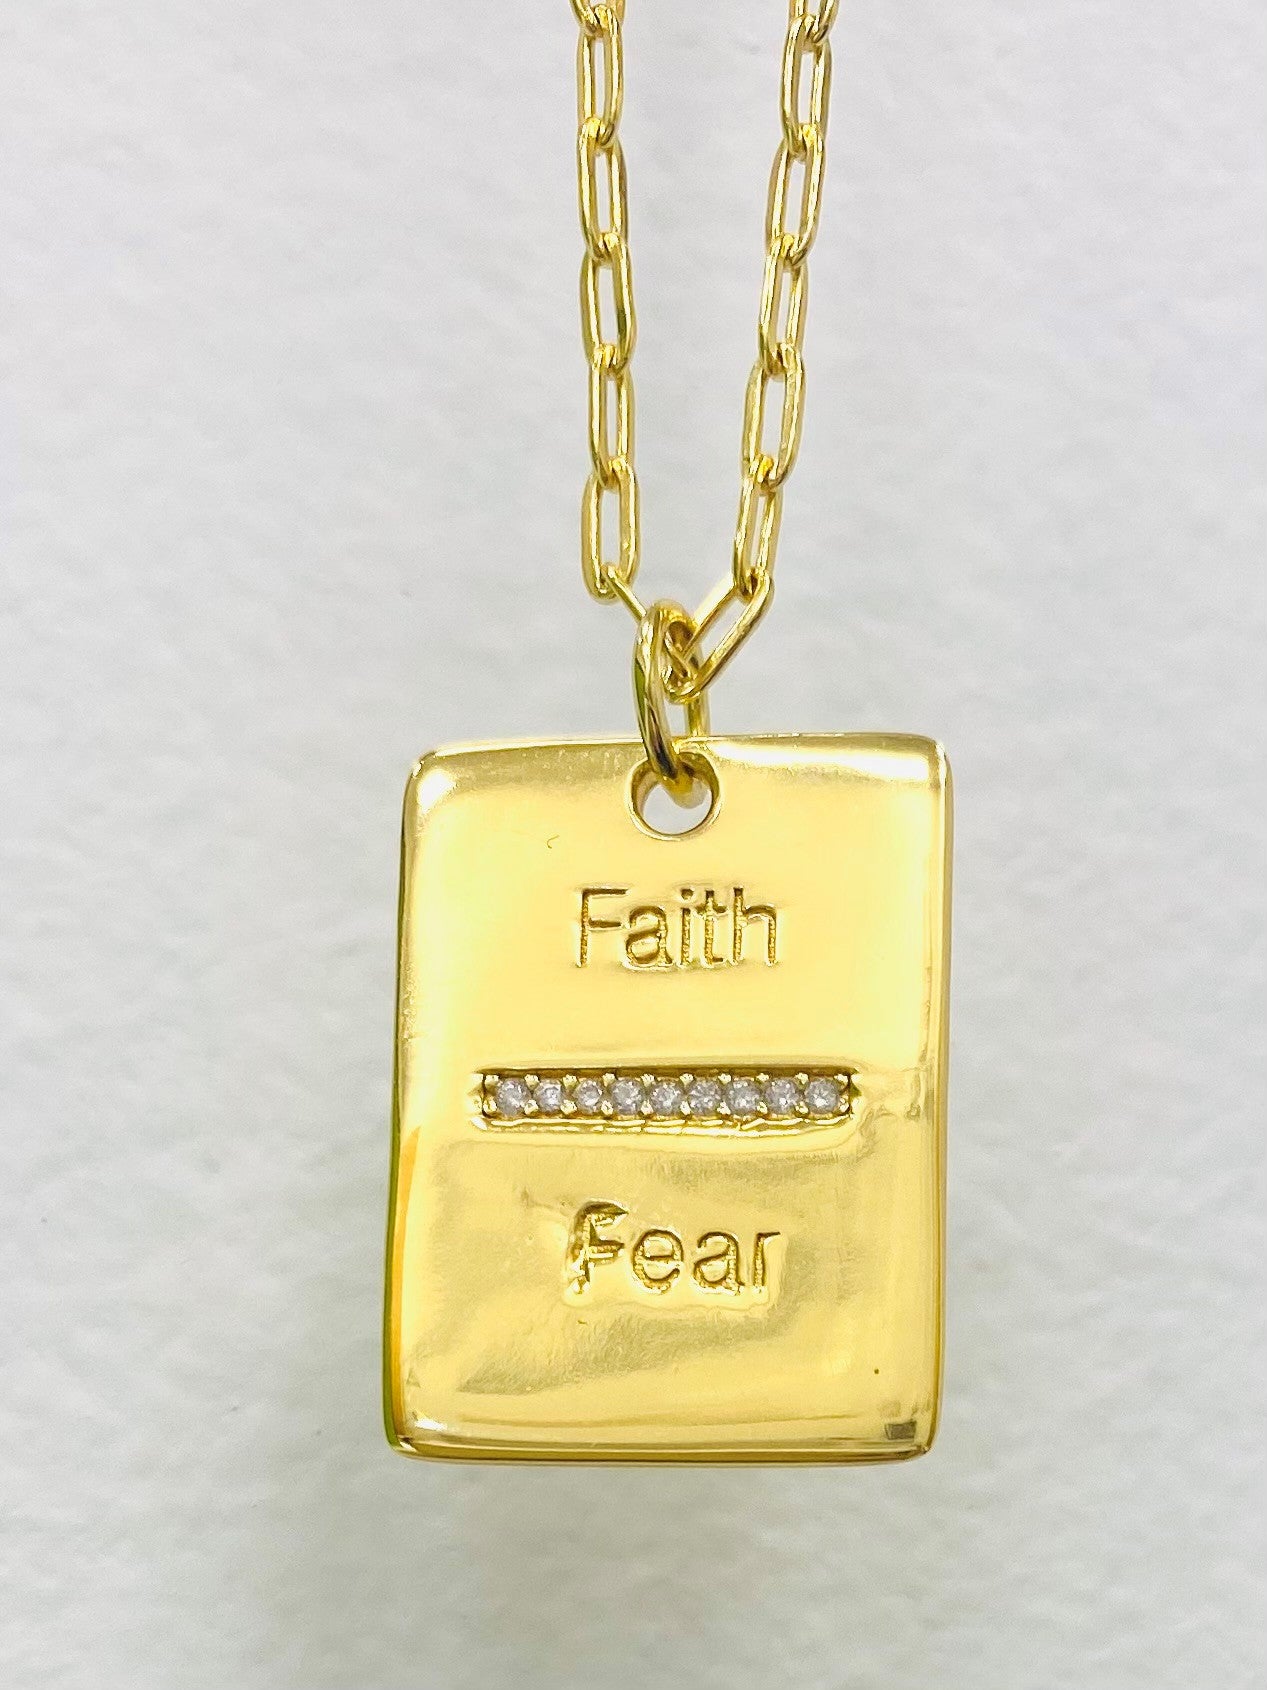 Faith Over Fear | Allison Avery